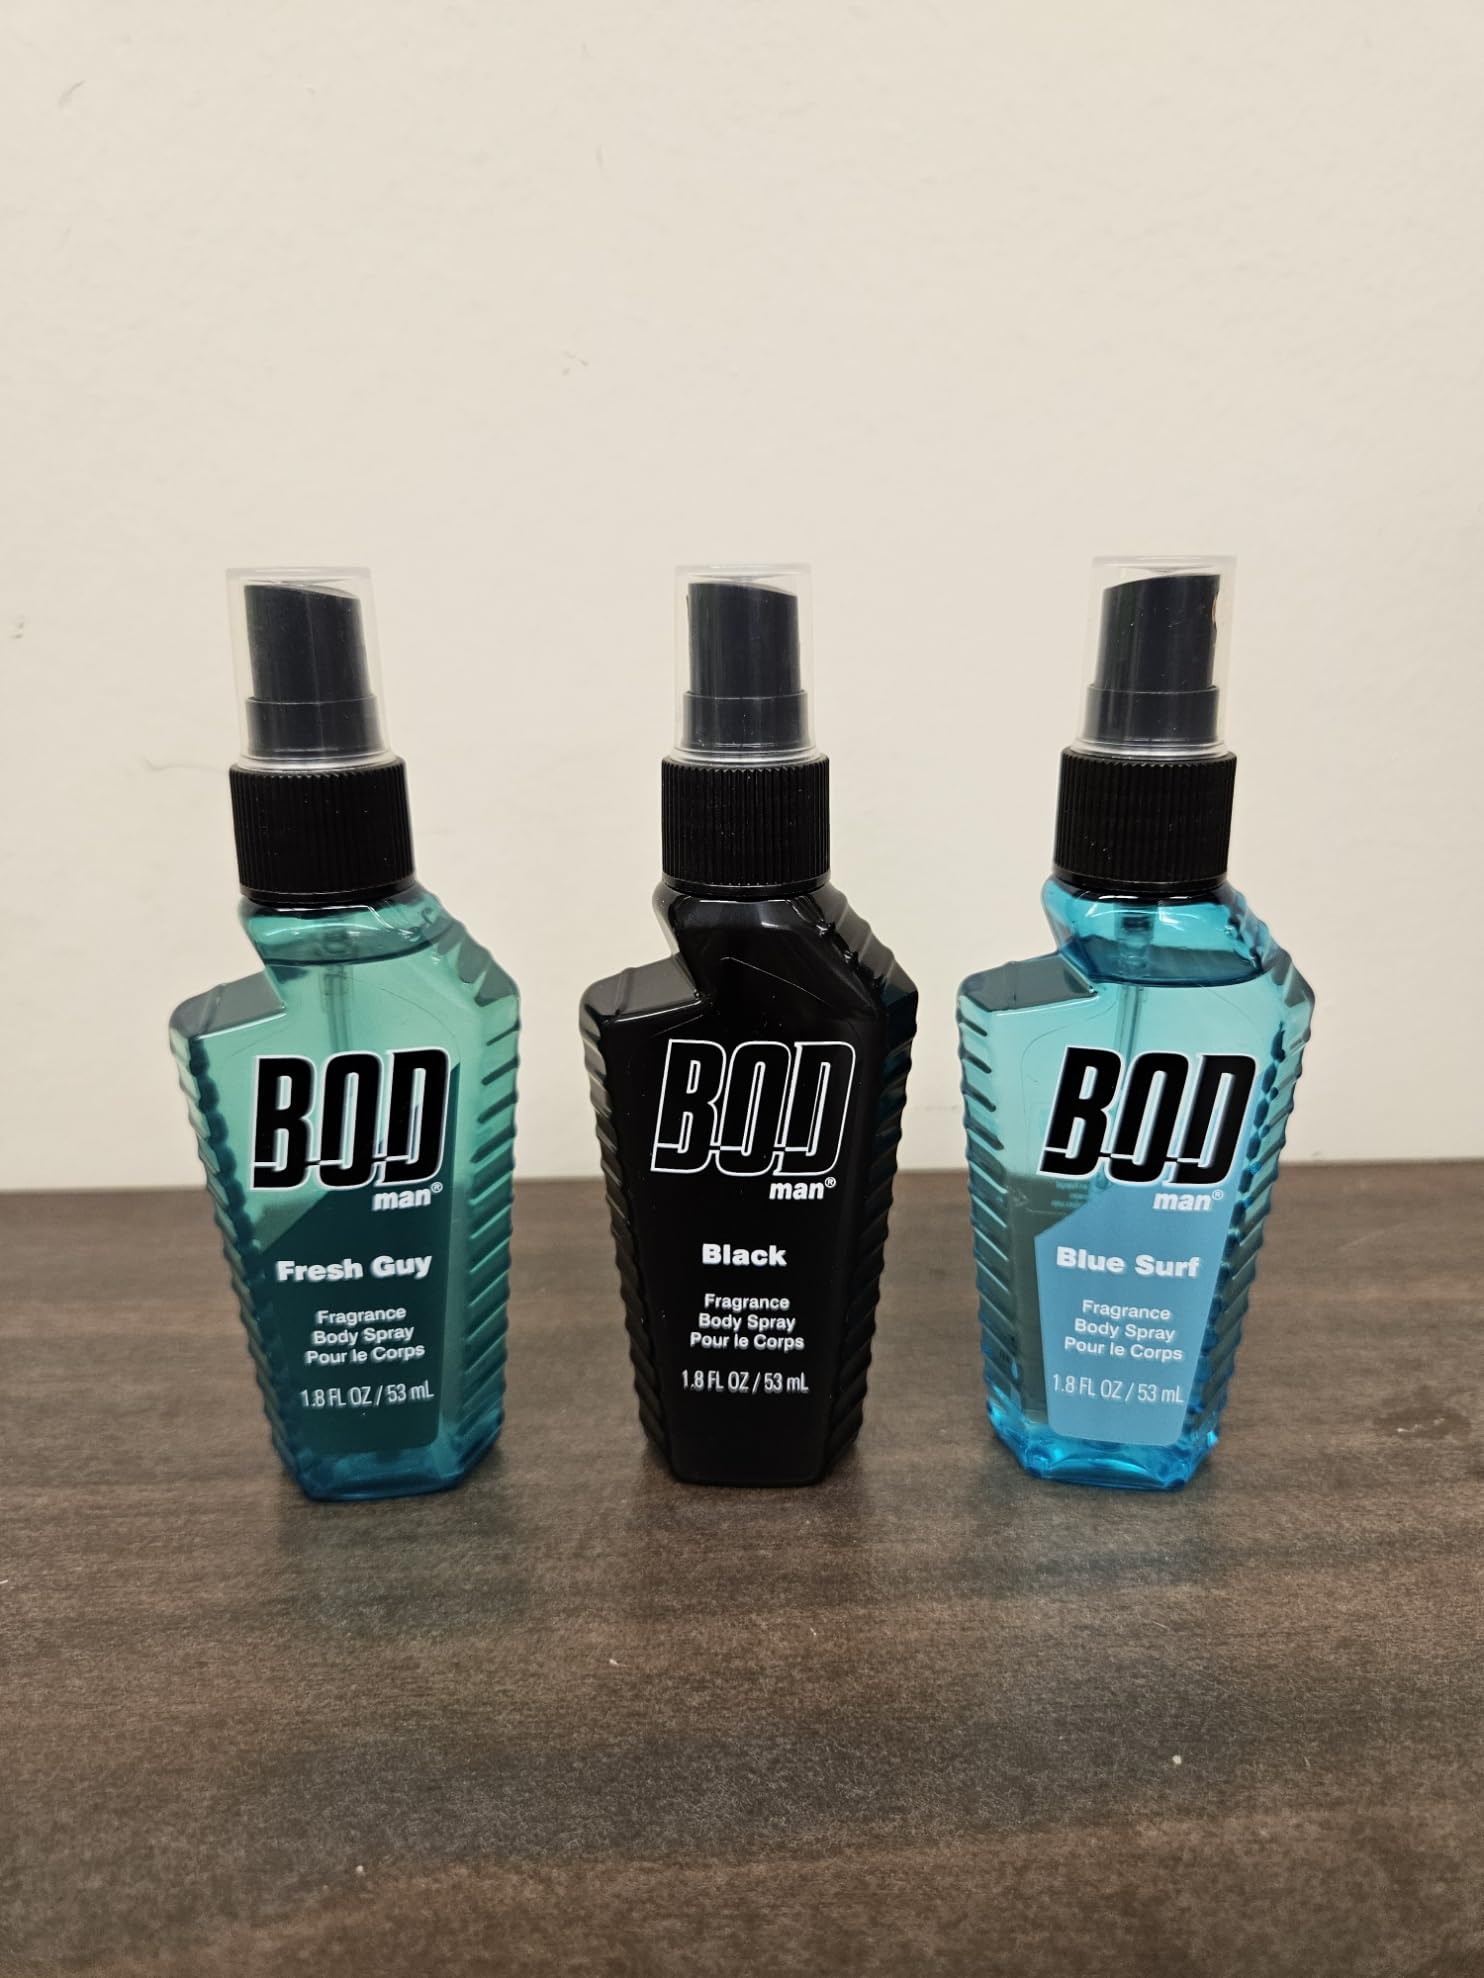 BOD Man Body Spray Pack of 3 Styles, Black, Fresh Guy, Slue Surf